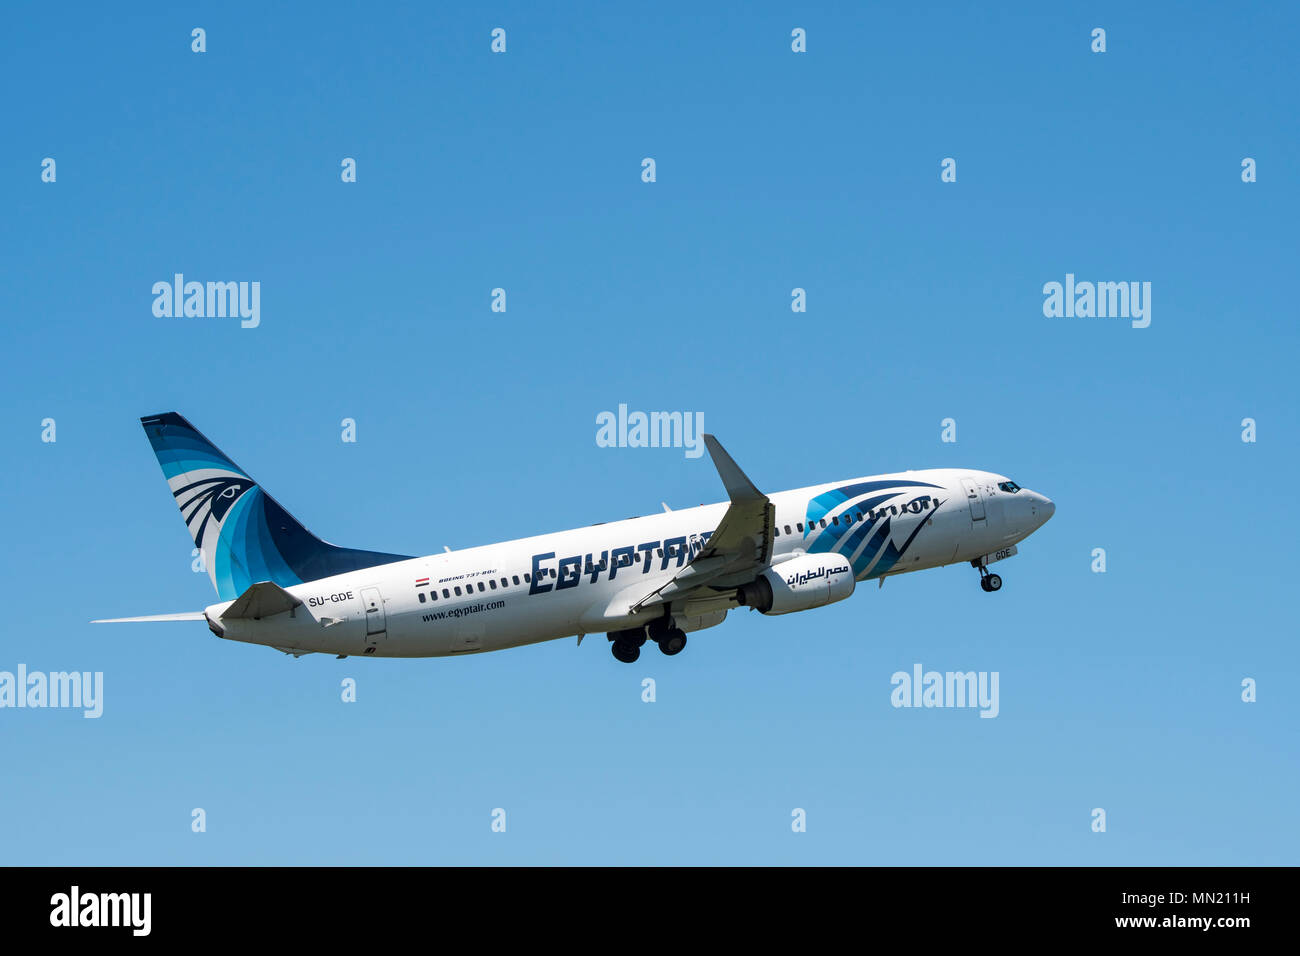 Boeing 737-800, zwei Motor kurz- bis mittelfristige, narrow-Body Jet Airliner von EgyptAir, Ägyptischen Fluggesellschaft im Flug gegen den blauen Himmel Stockfoto